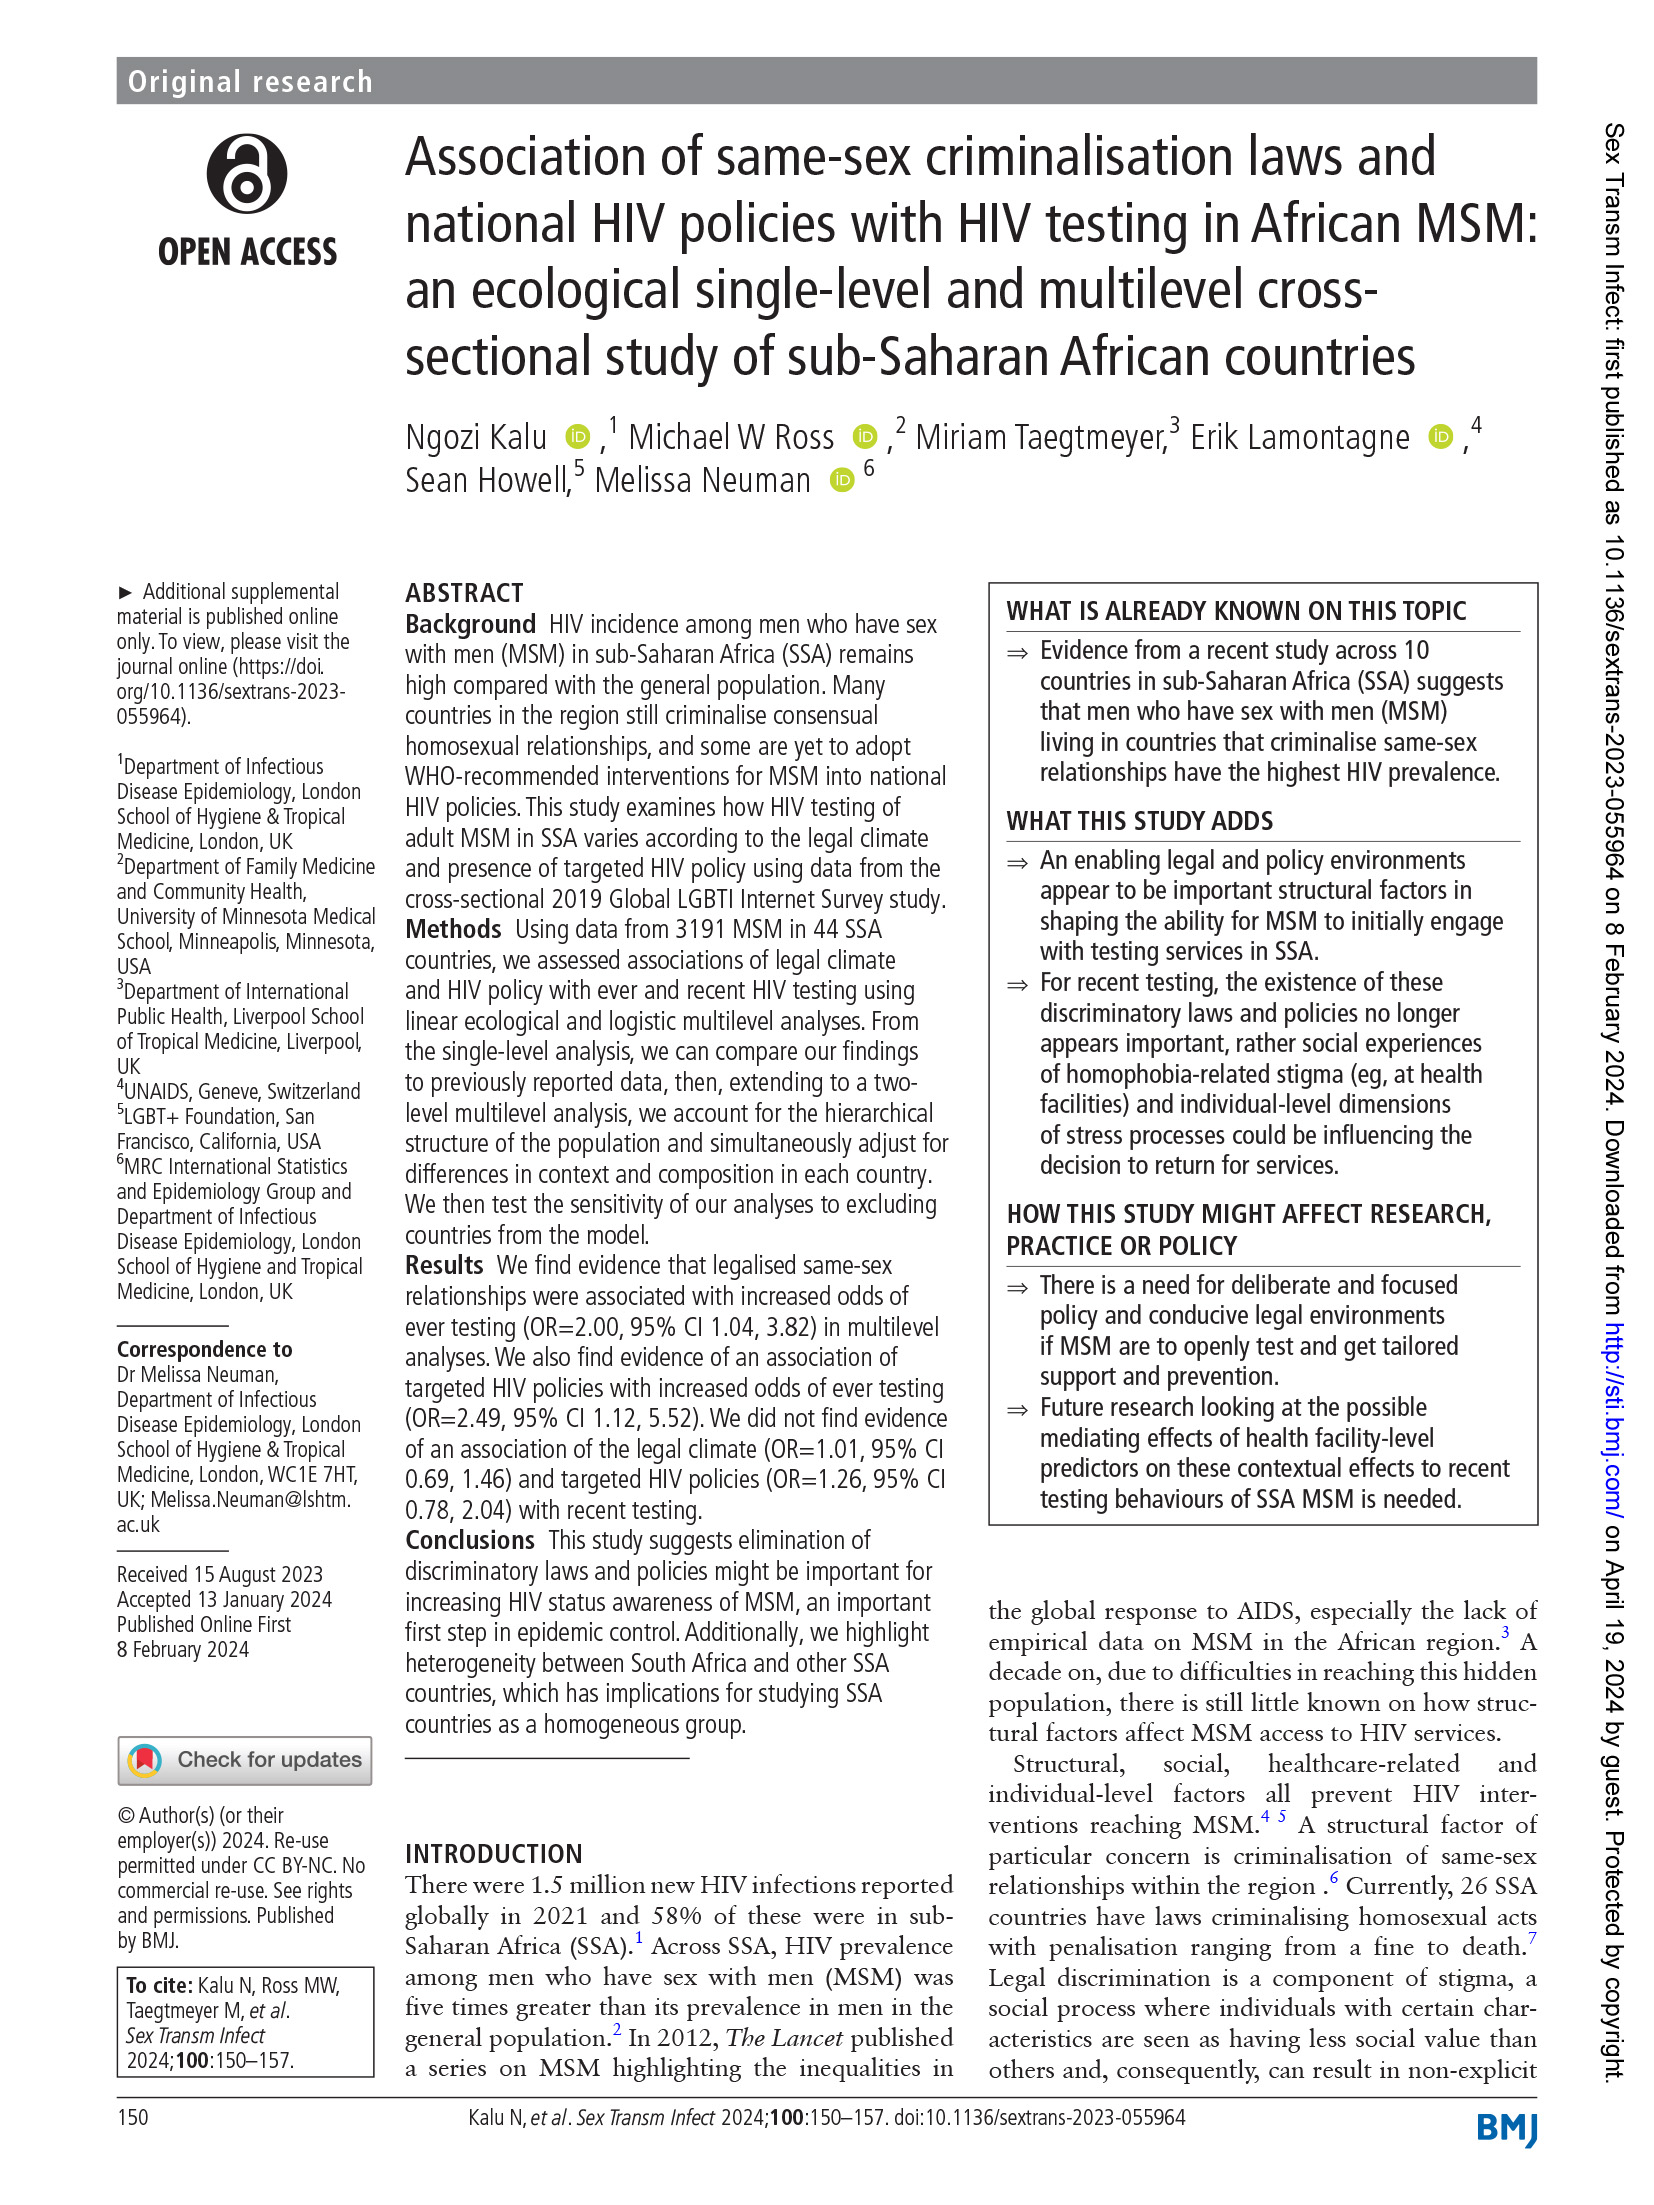 Associação entre as leis de criminalização do homossexualismo e as políticas nacionais de VIH e a realização de testes de VIH em HSH africanos: um estudo ecológico transversal de nível único e multinível em países da África Subsariana - capa